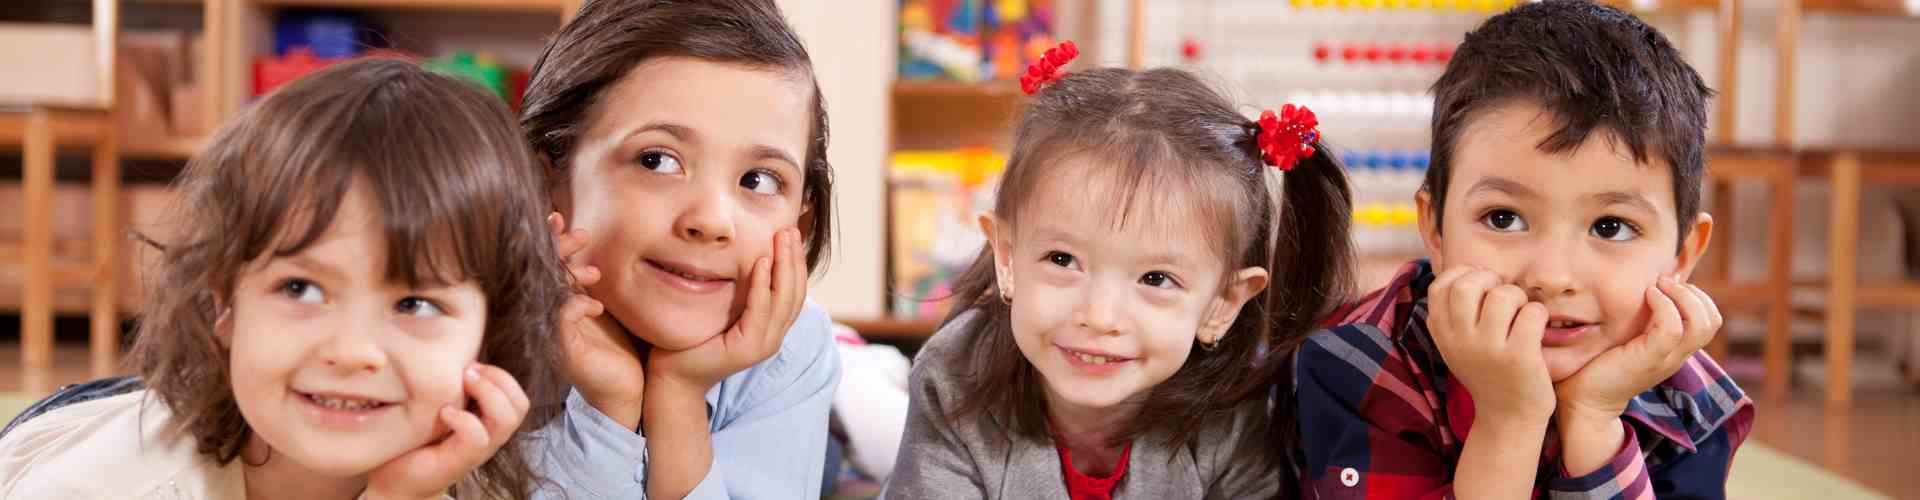 Emotional Development in Preschoolers